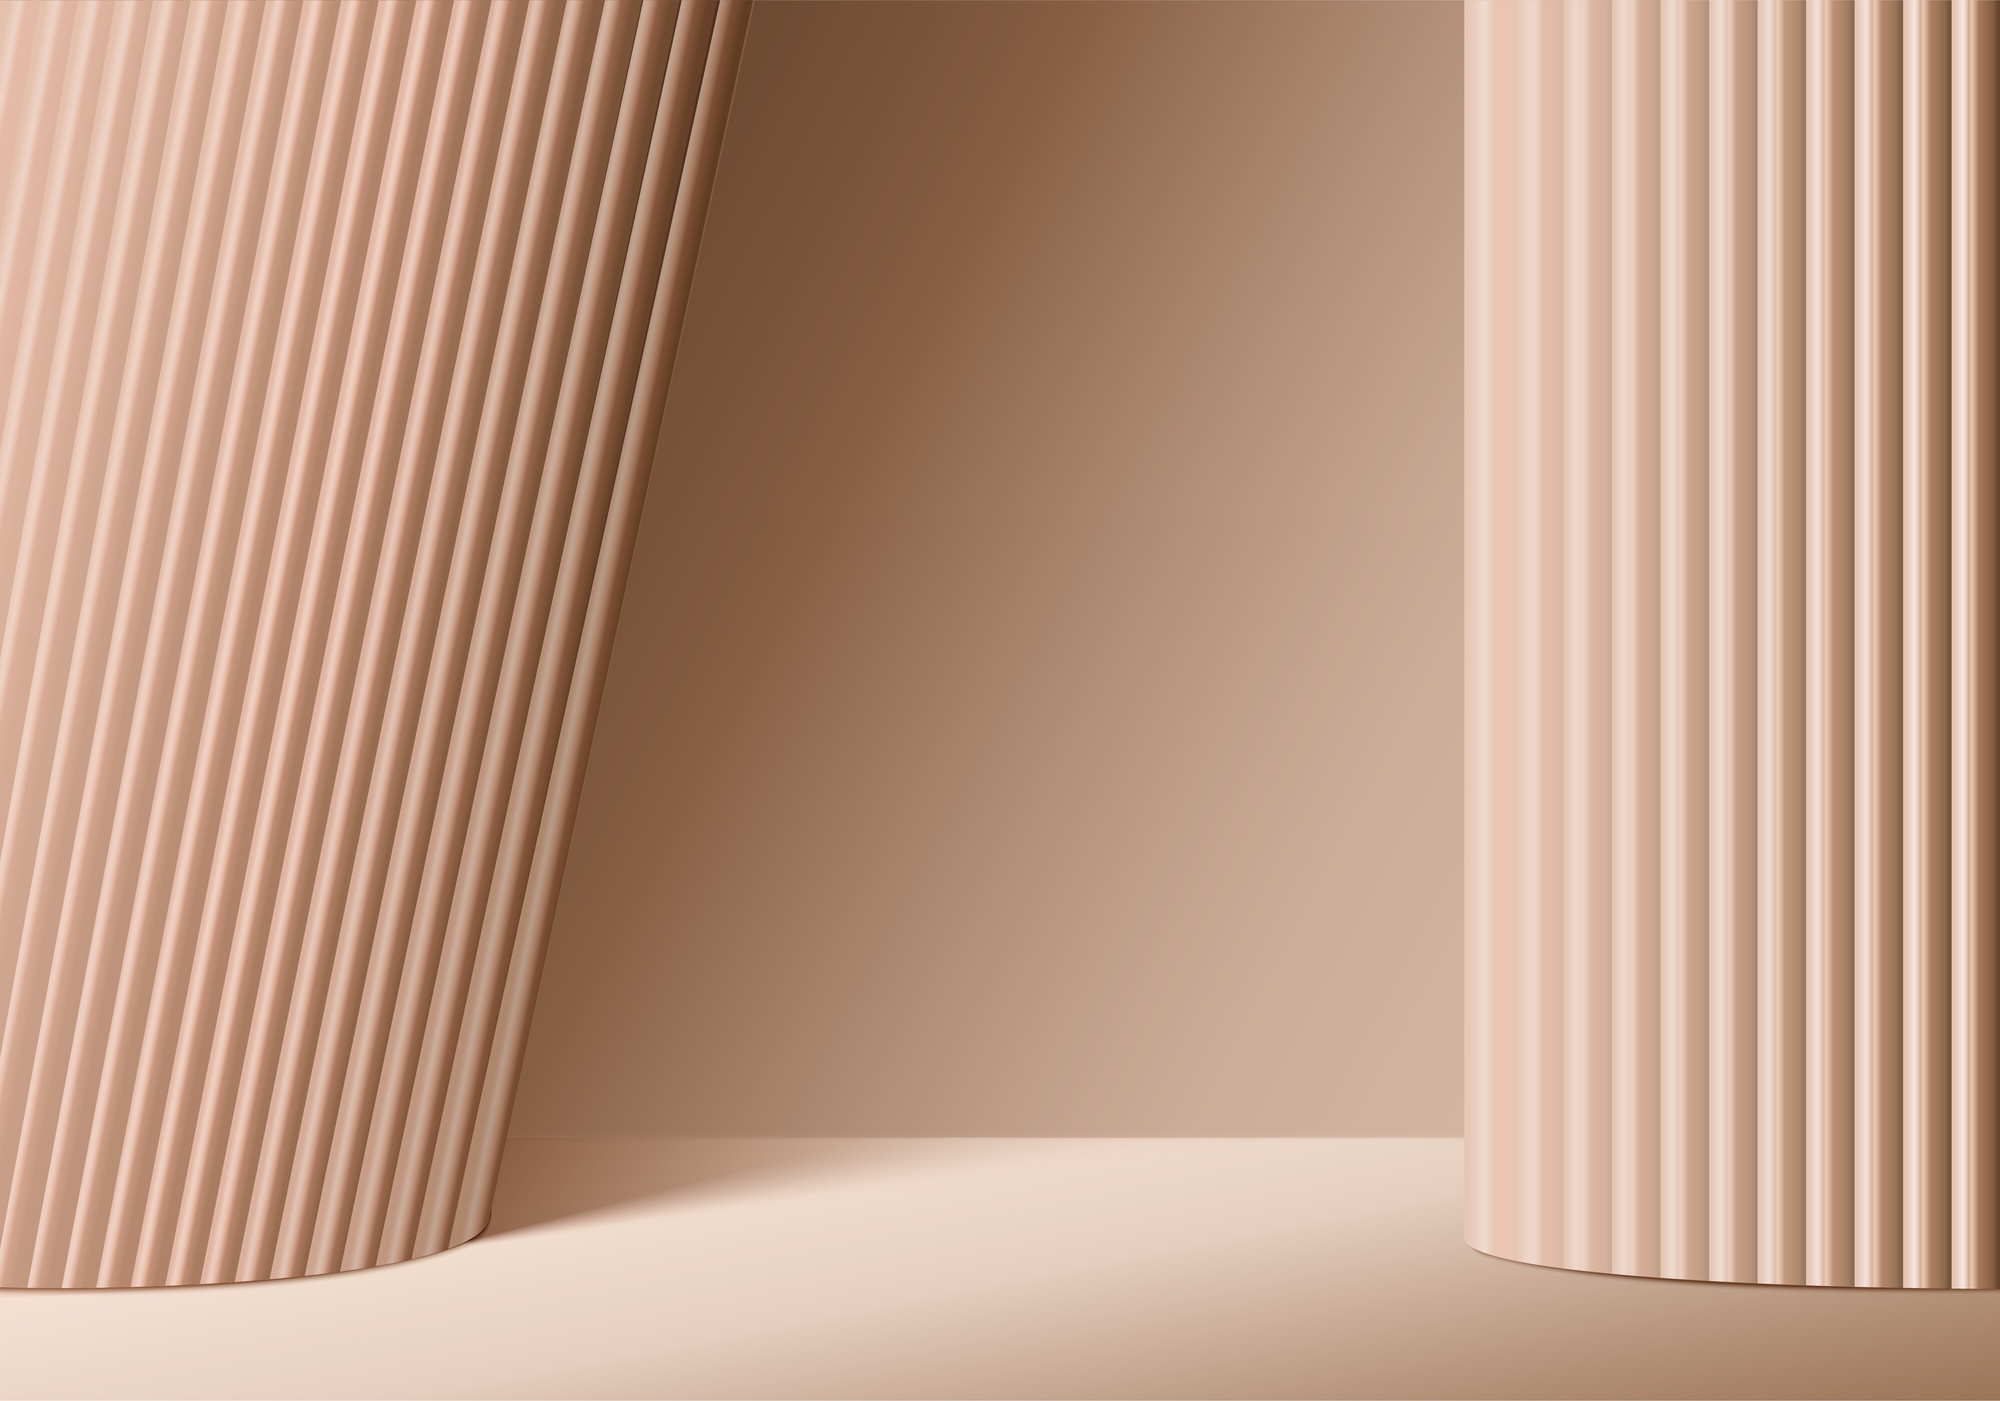 Beige Pillars on Brown Background